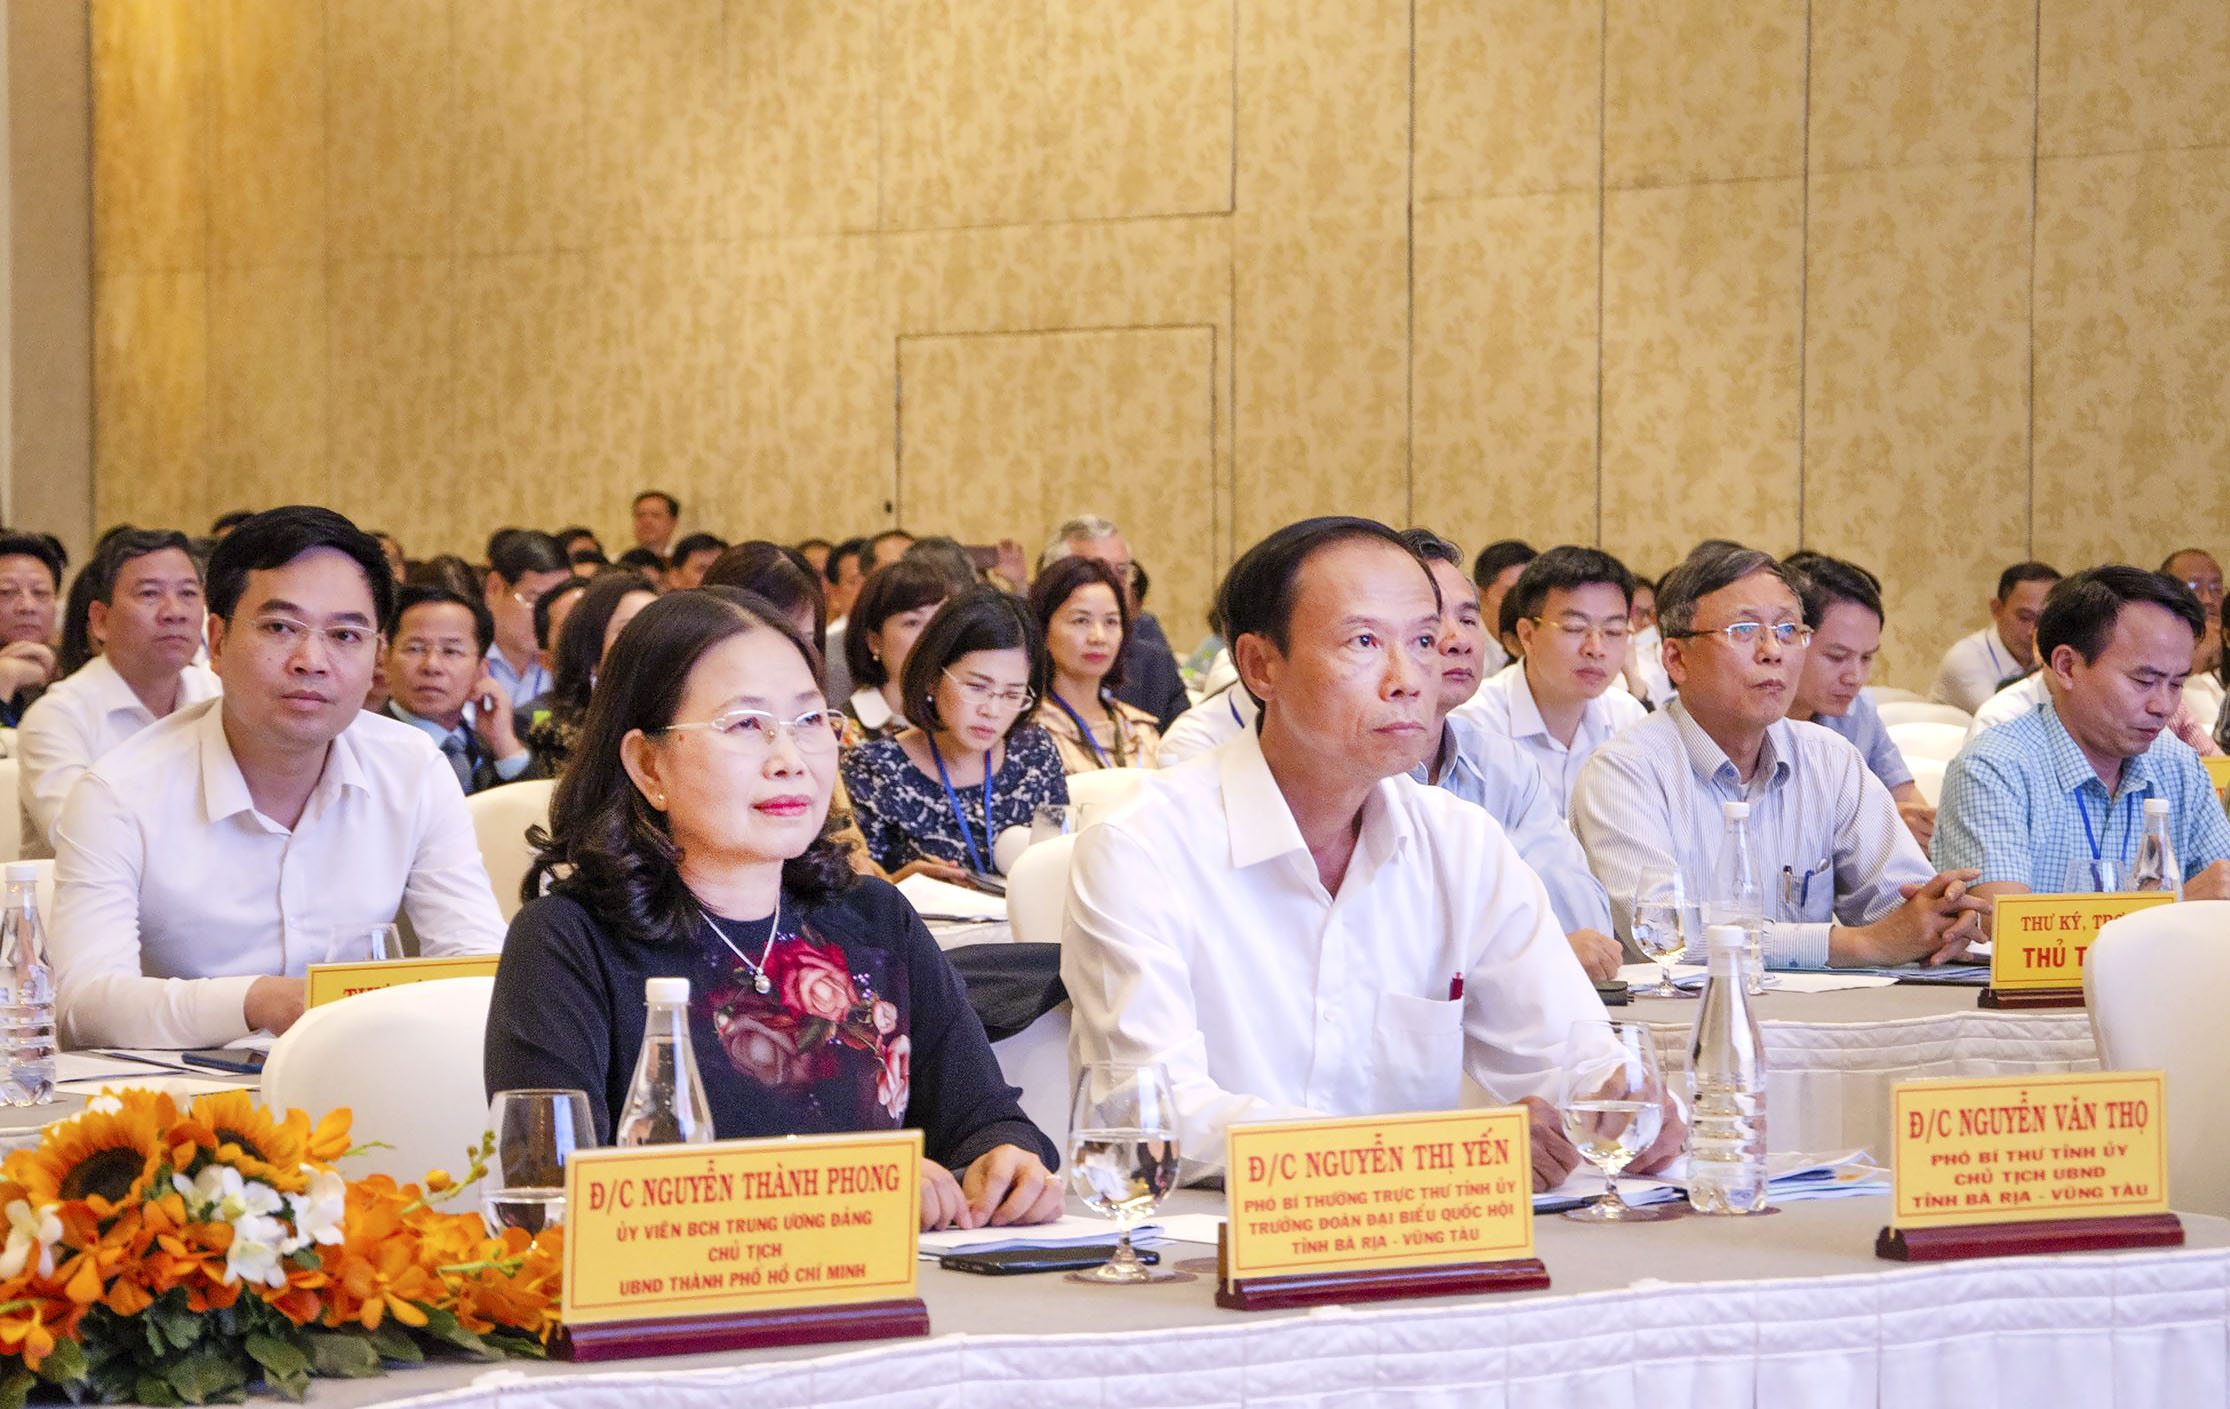 Bà Nguyễn Thị Yến, Phó Bí thư Thường trực Tỉnh ủy; ông Nguyễn Văn Thọ, Chủ tịch UBND tỉnh cùng các đại biểu tham dự hội thảo.